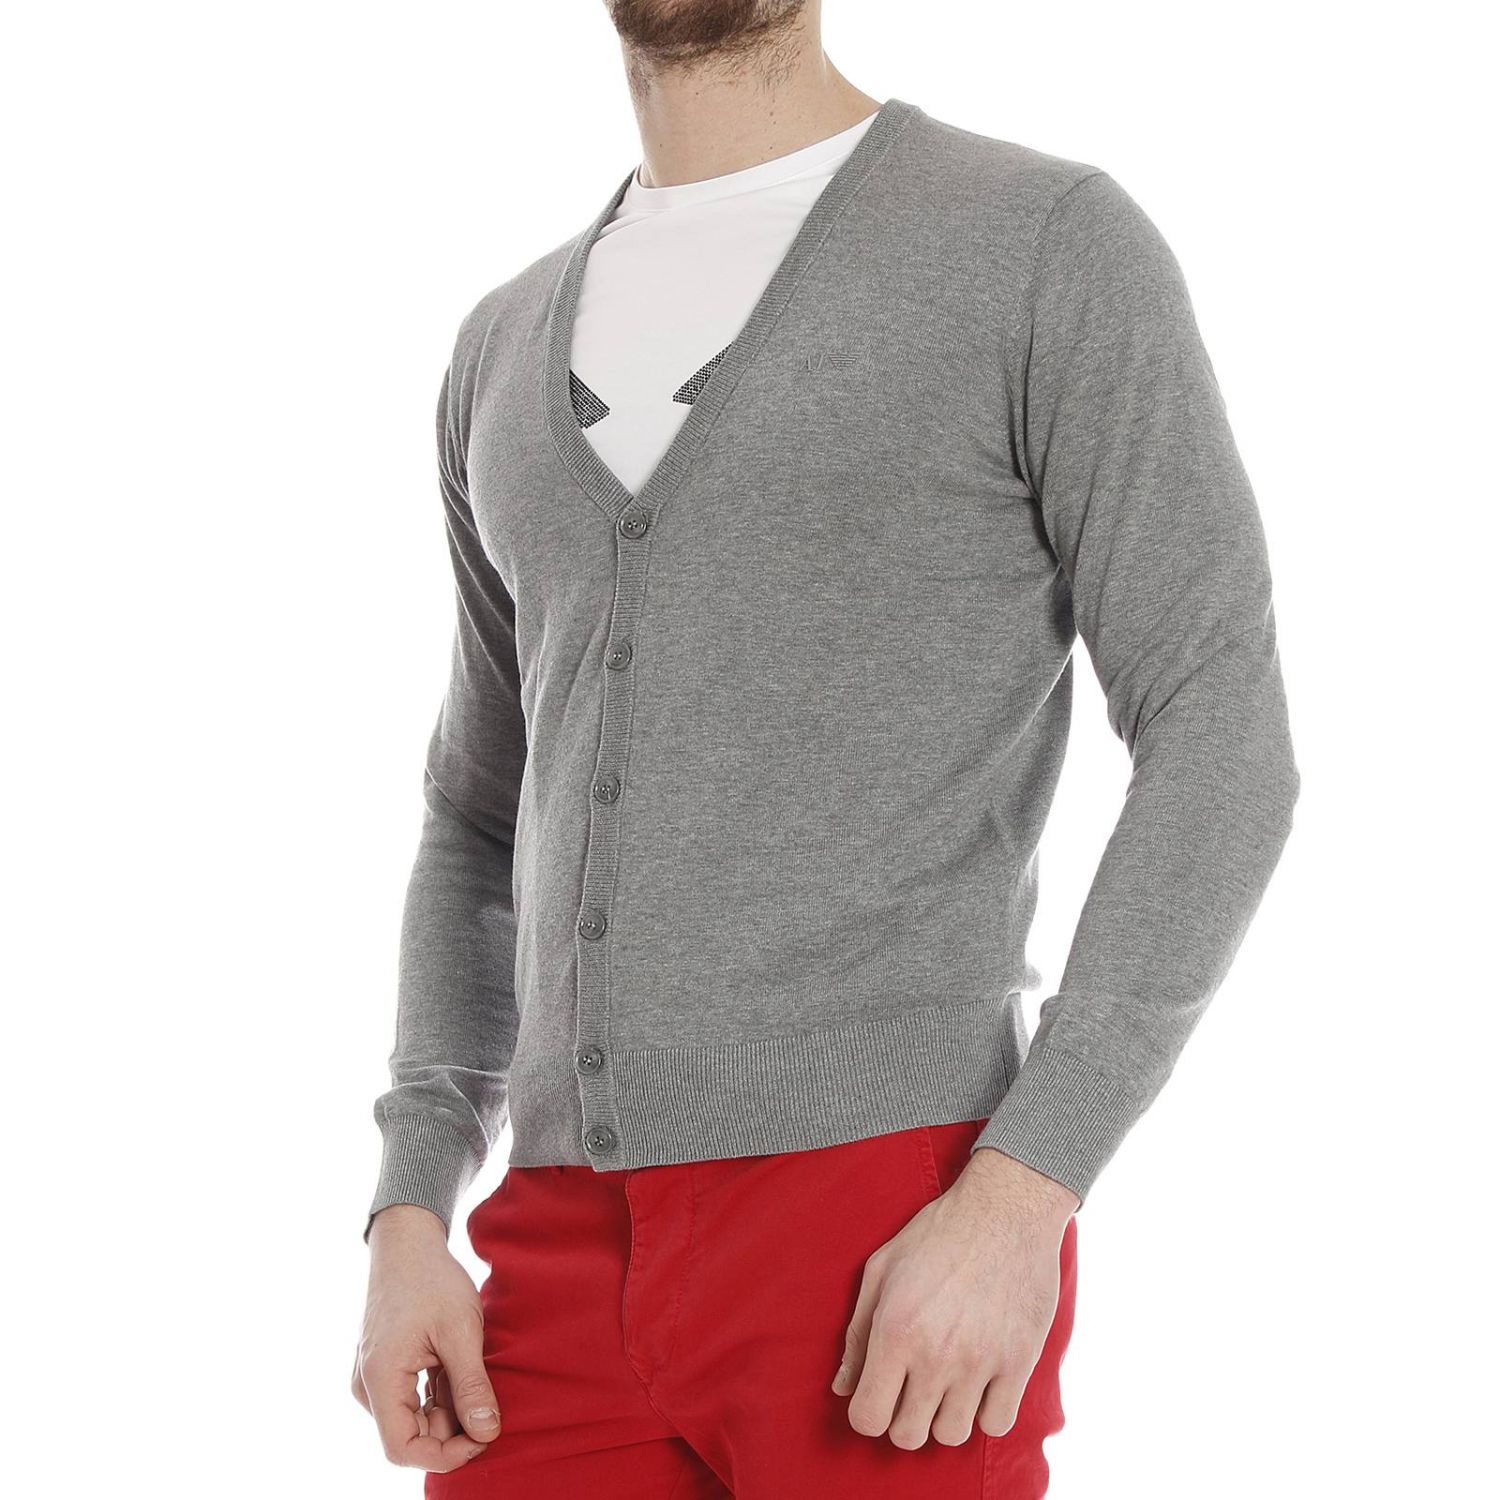 Lyst - Armani jeans Giorgio Armani Men's Sweater in Gray for Men